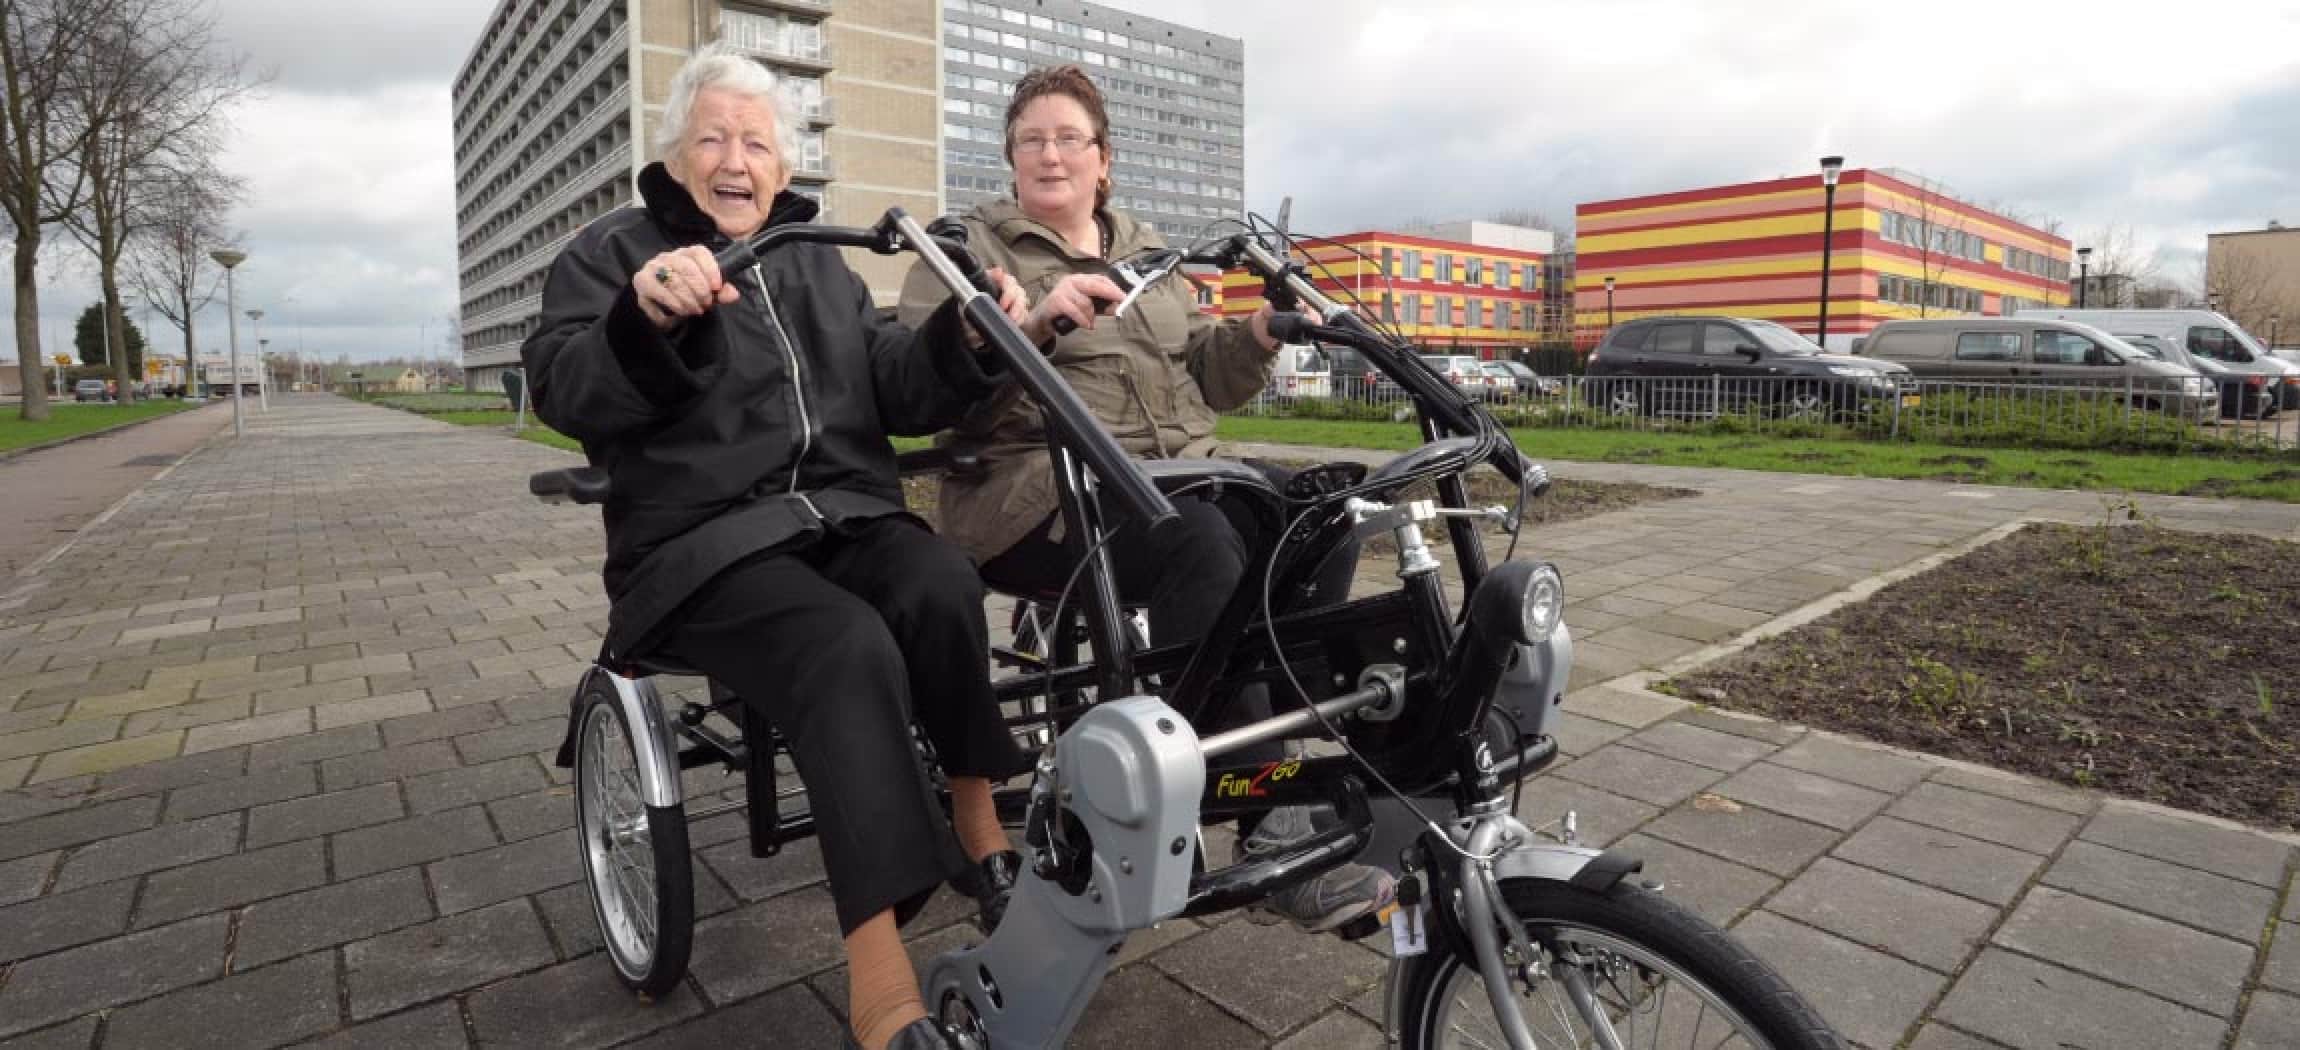 Twee dames oma buiten op duofiets met gebouwen op achtergrond